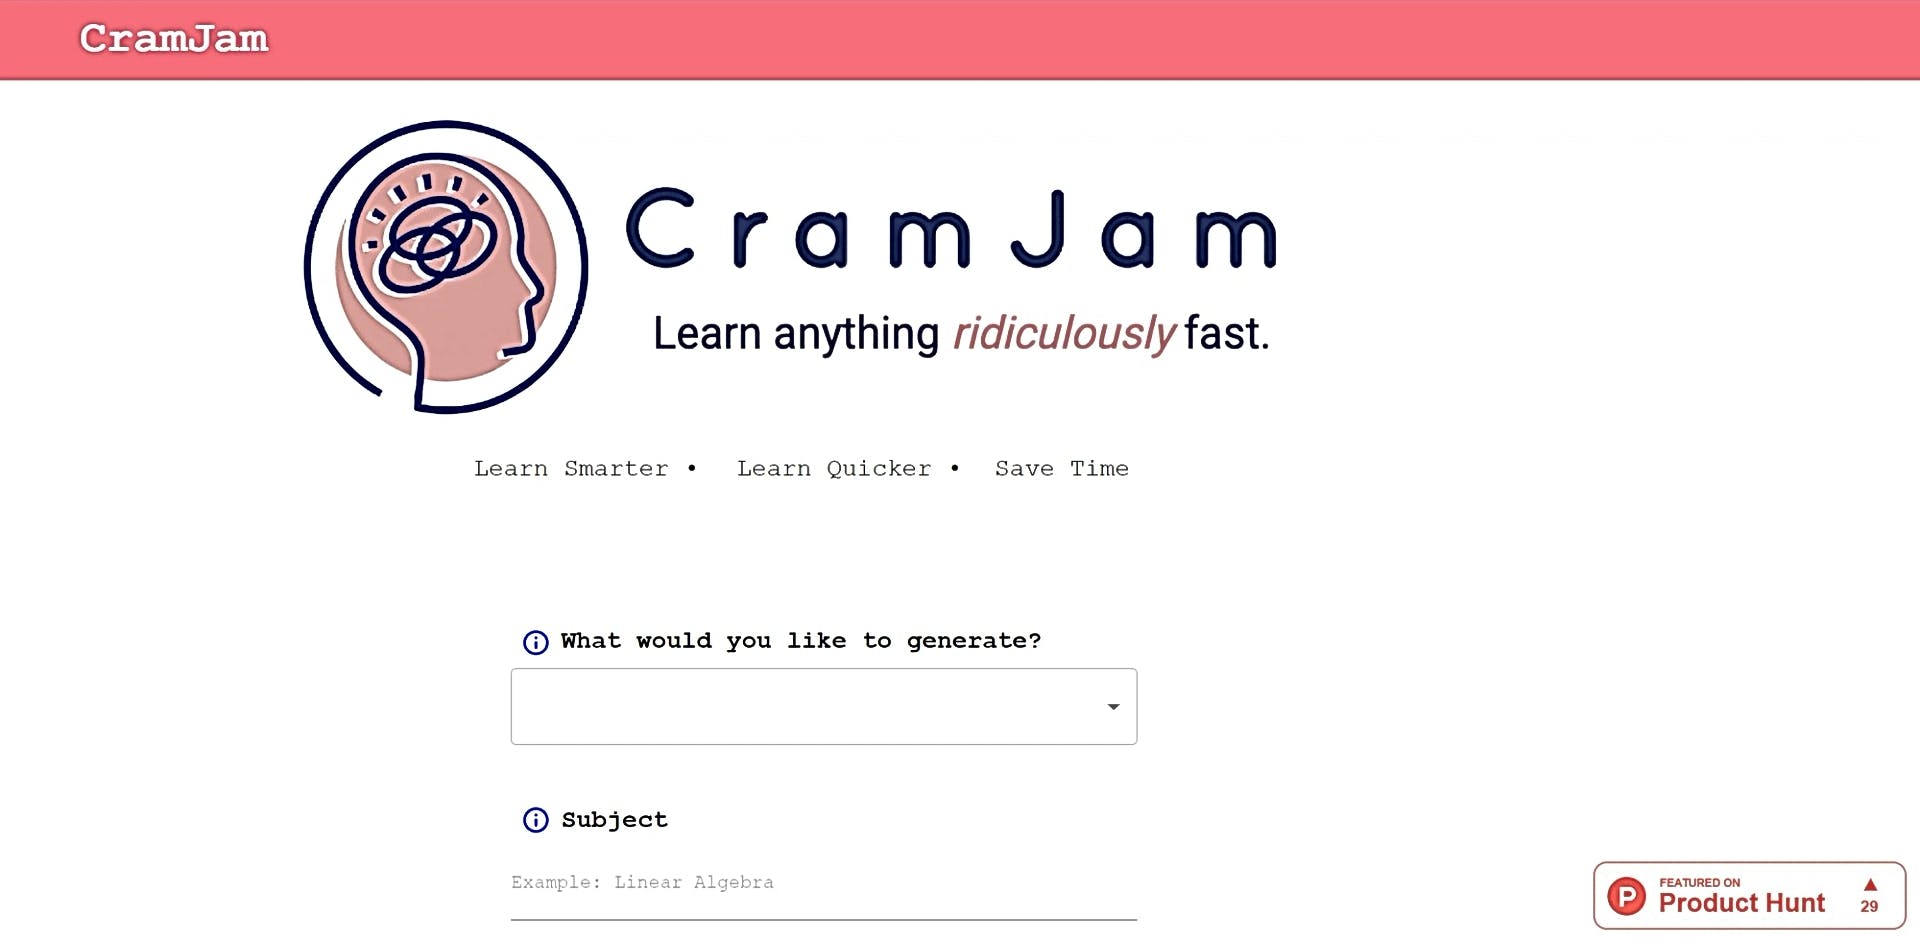 CramJam featured